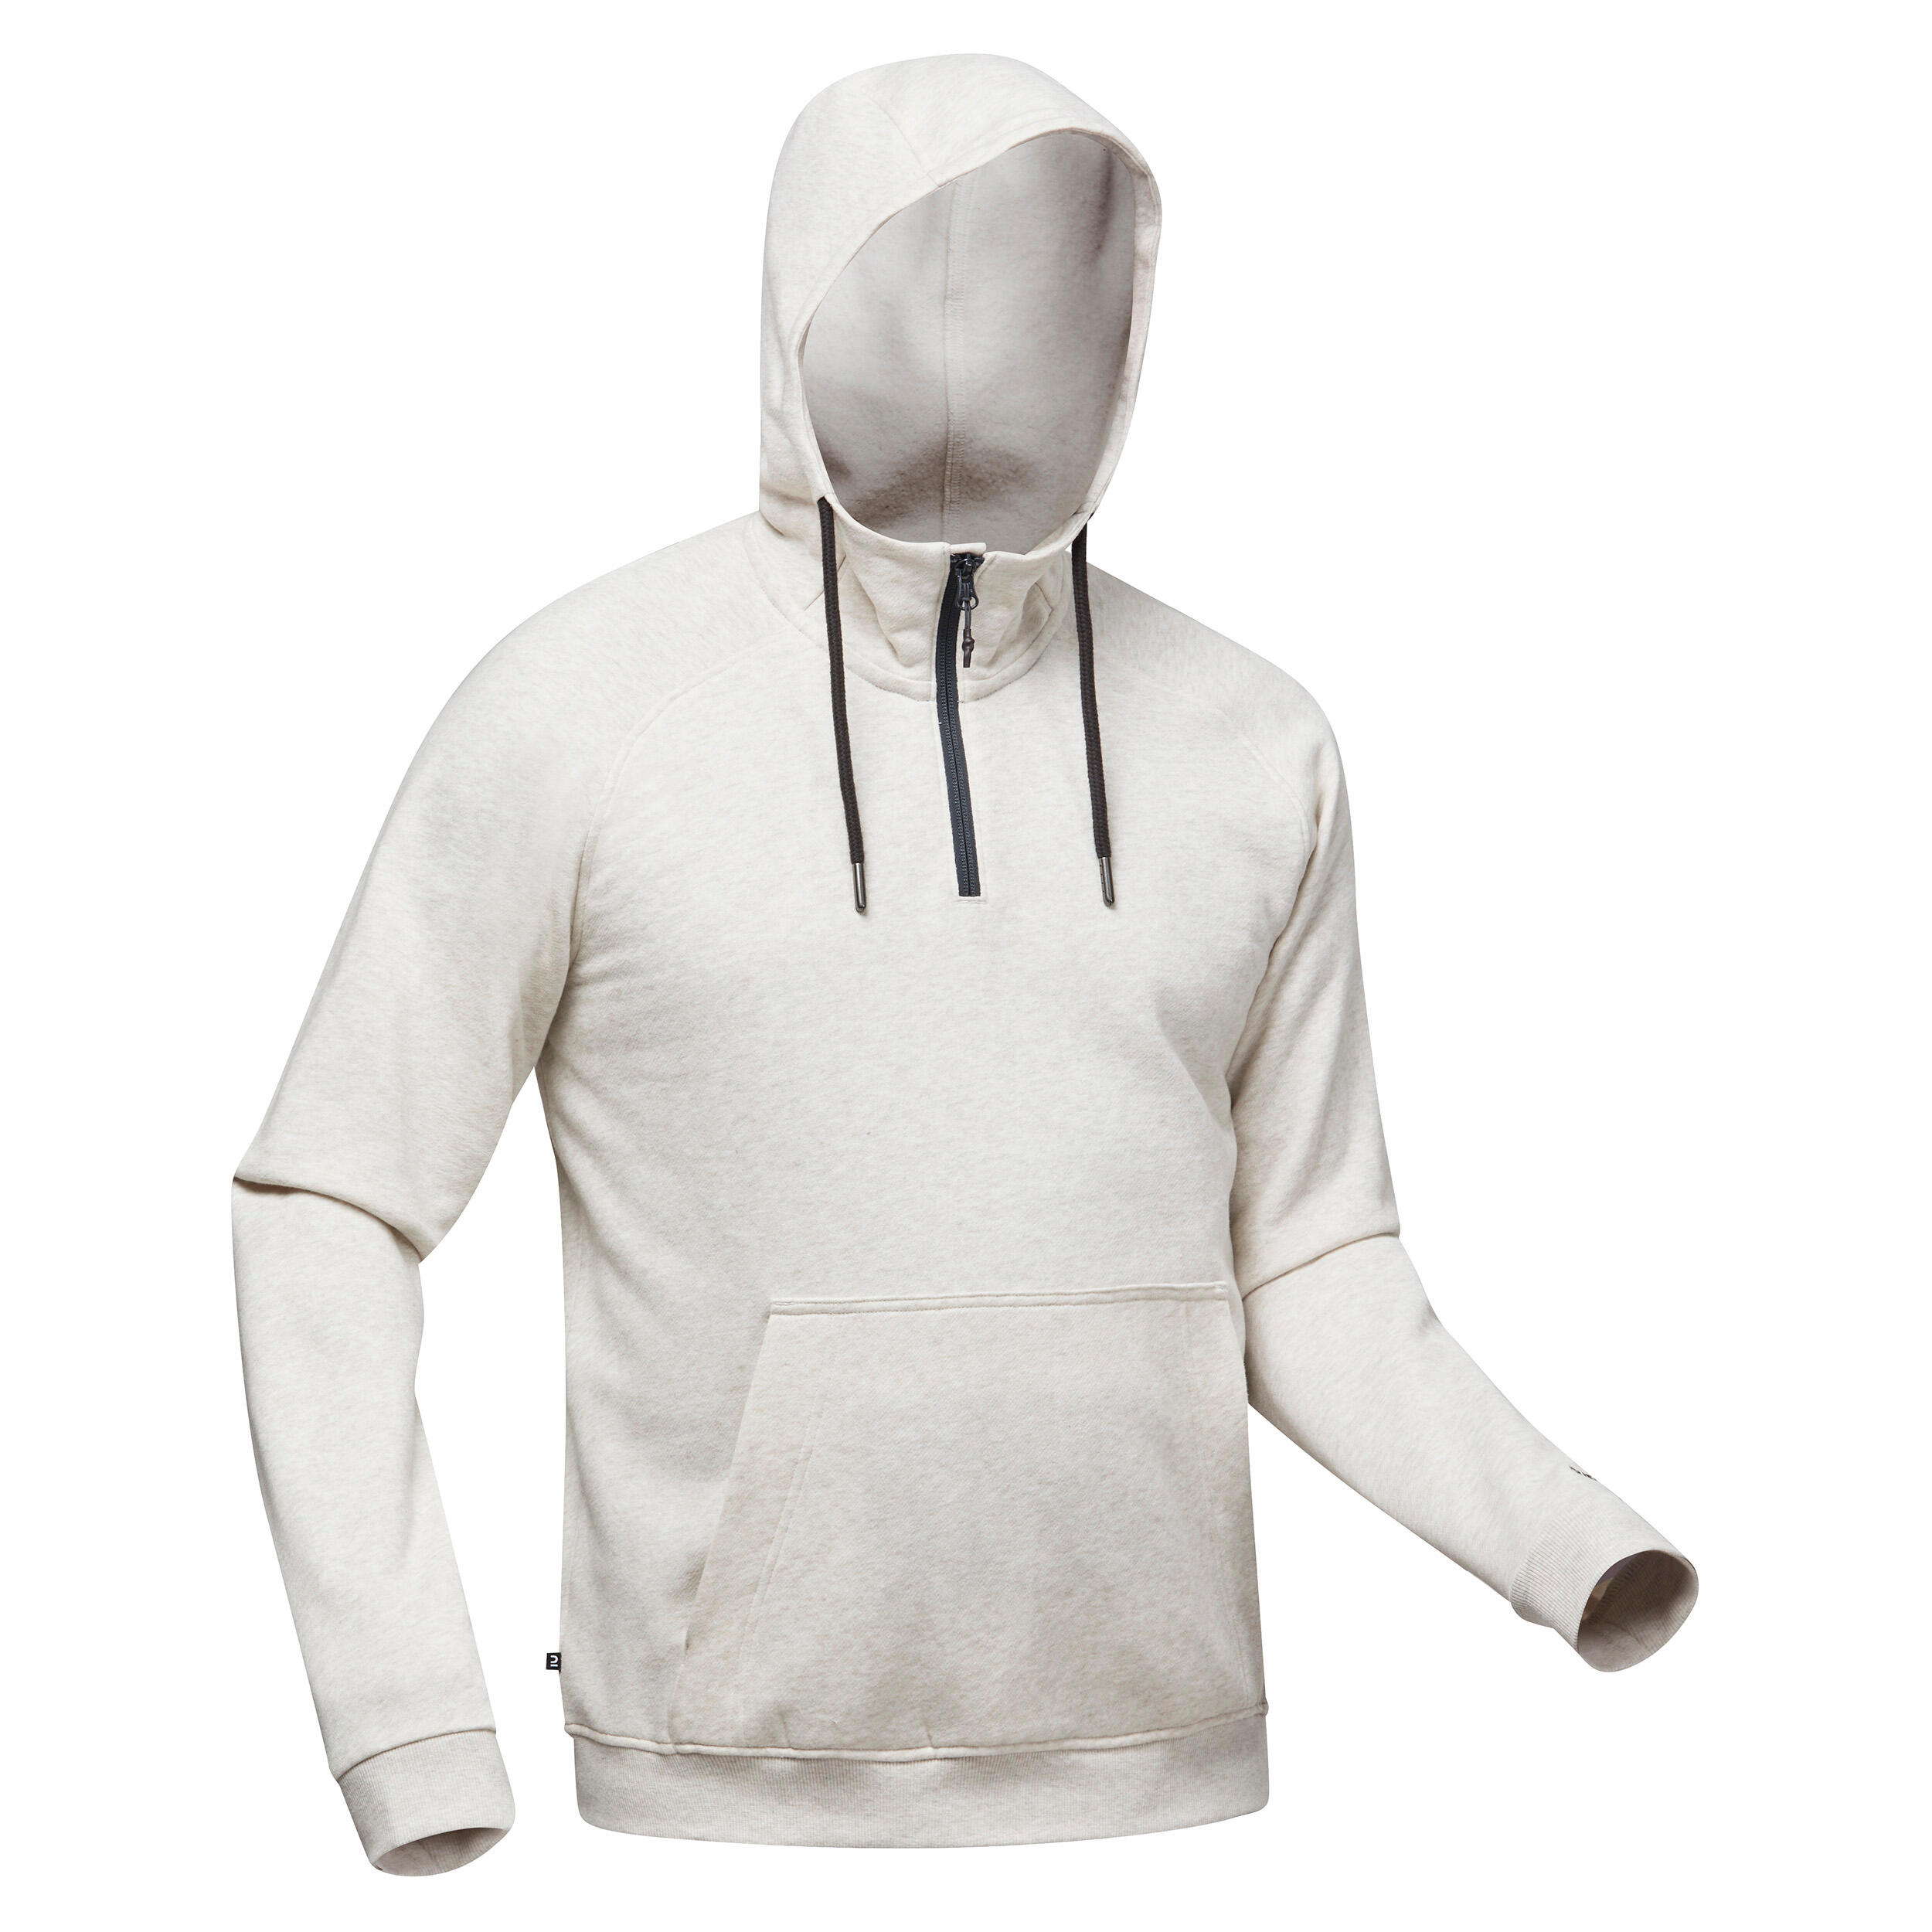 Buy Men's Hiking Hooded Sweatshirt NH150 Online | Decathlon